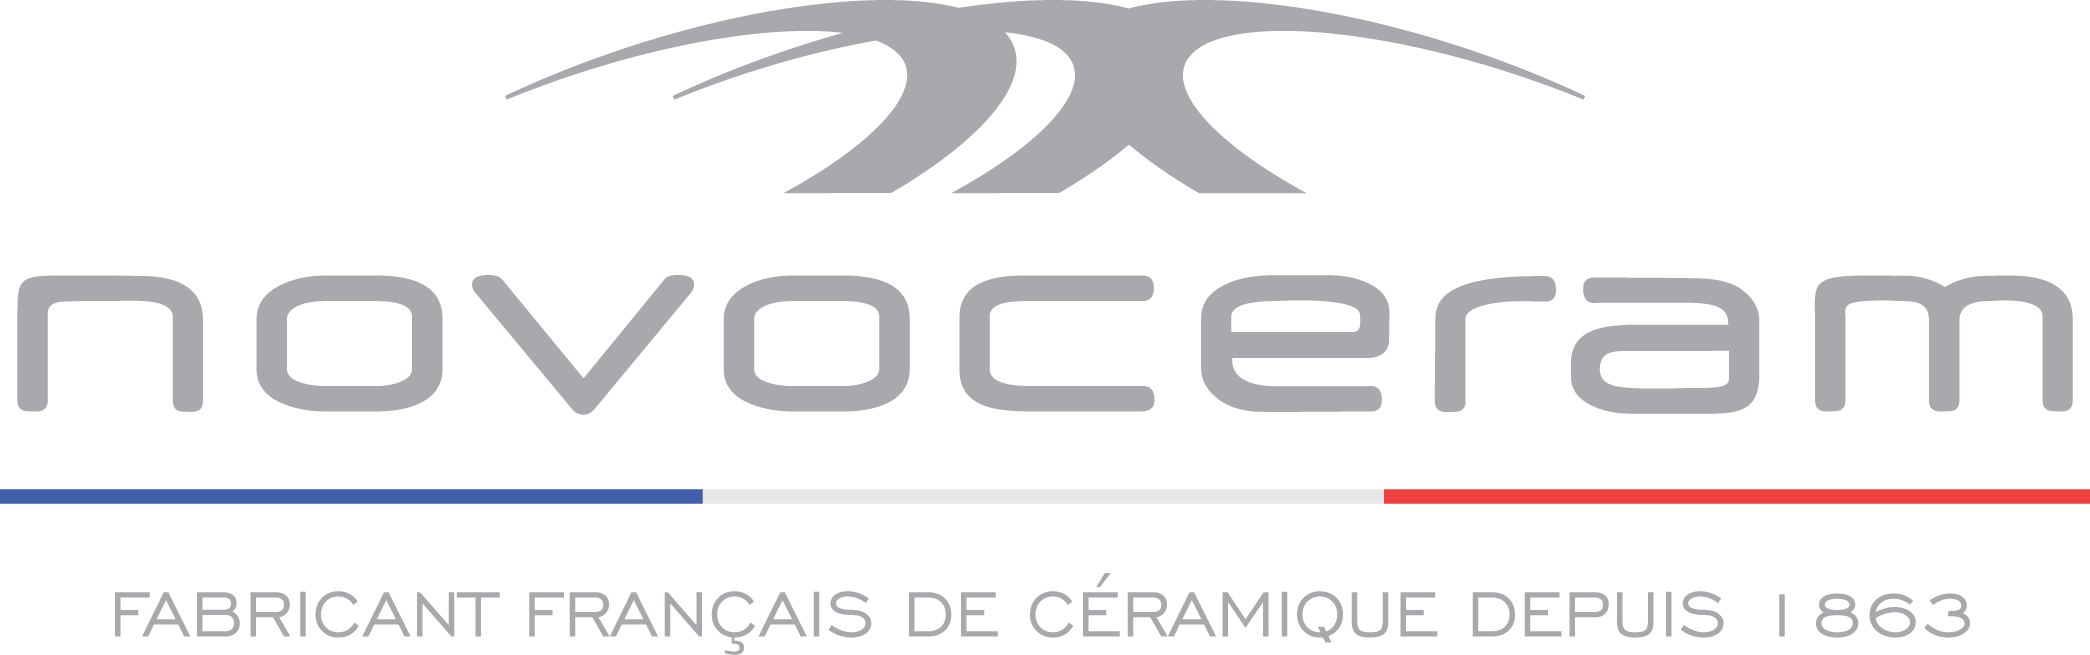 Novoceram - Fondée en 1863, la société Novoceram interprète les valeurs authentiques de l’élégance française avec des carreaux et des produits céramiques en grès cérame pour le revêtement de sols et de murs.